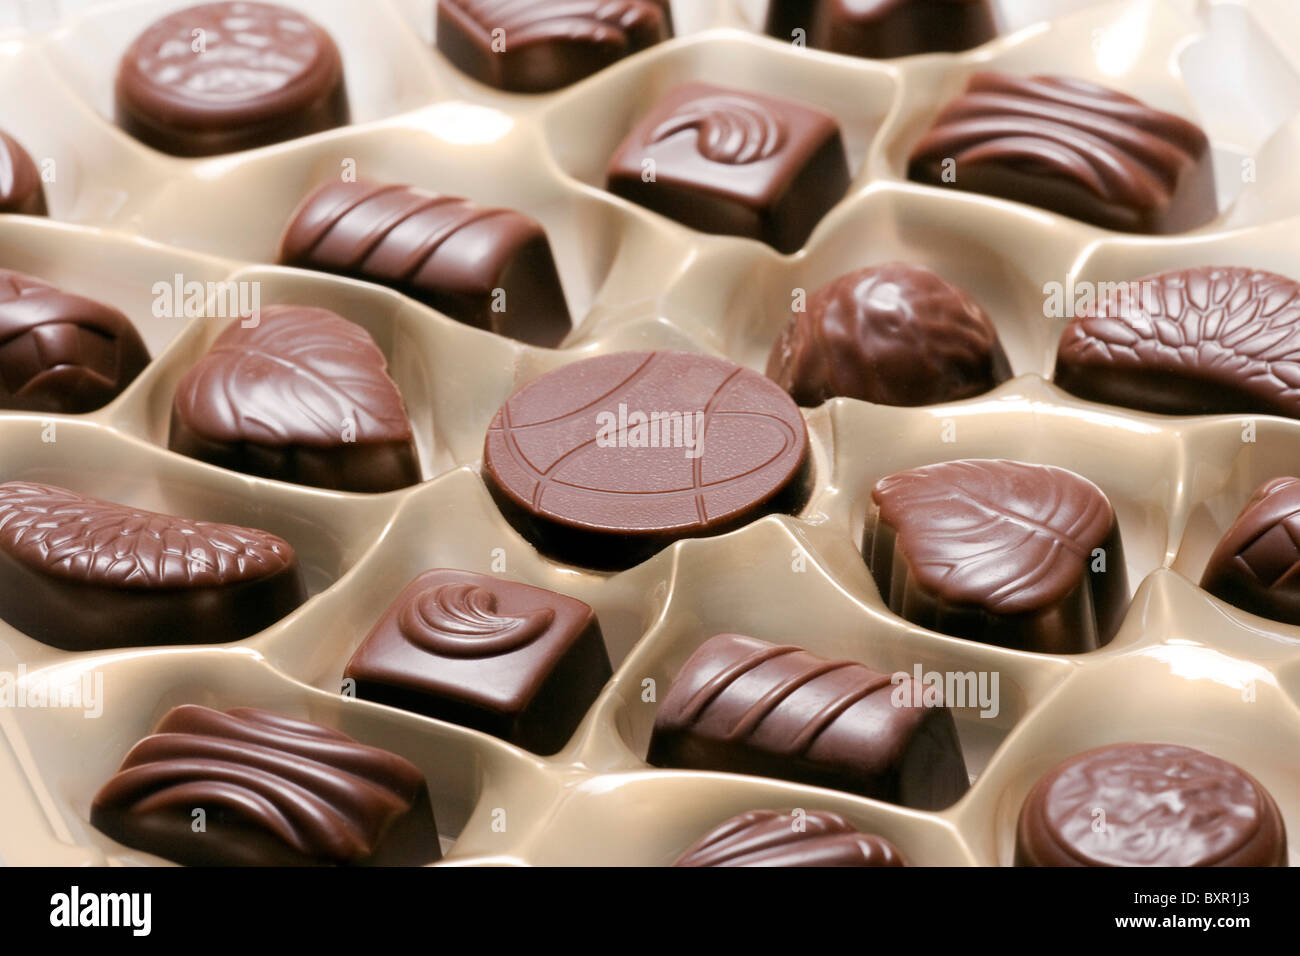 tray of chocolates Stock Photo